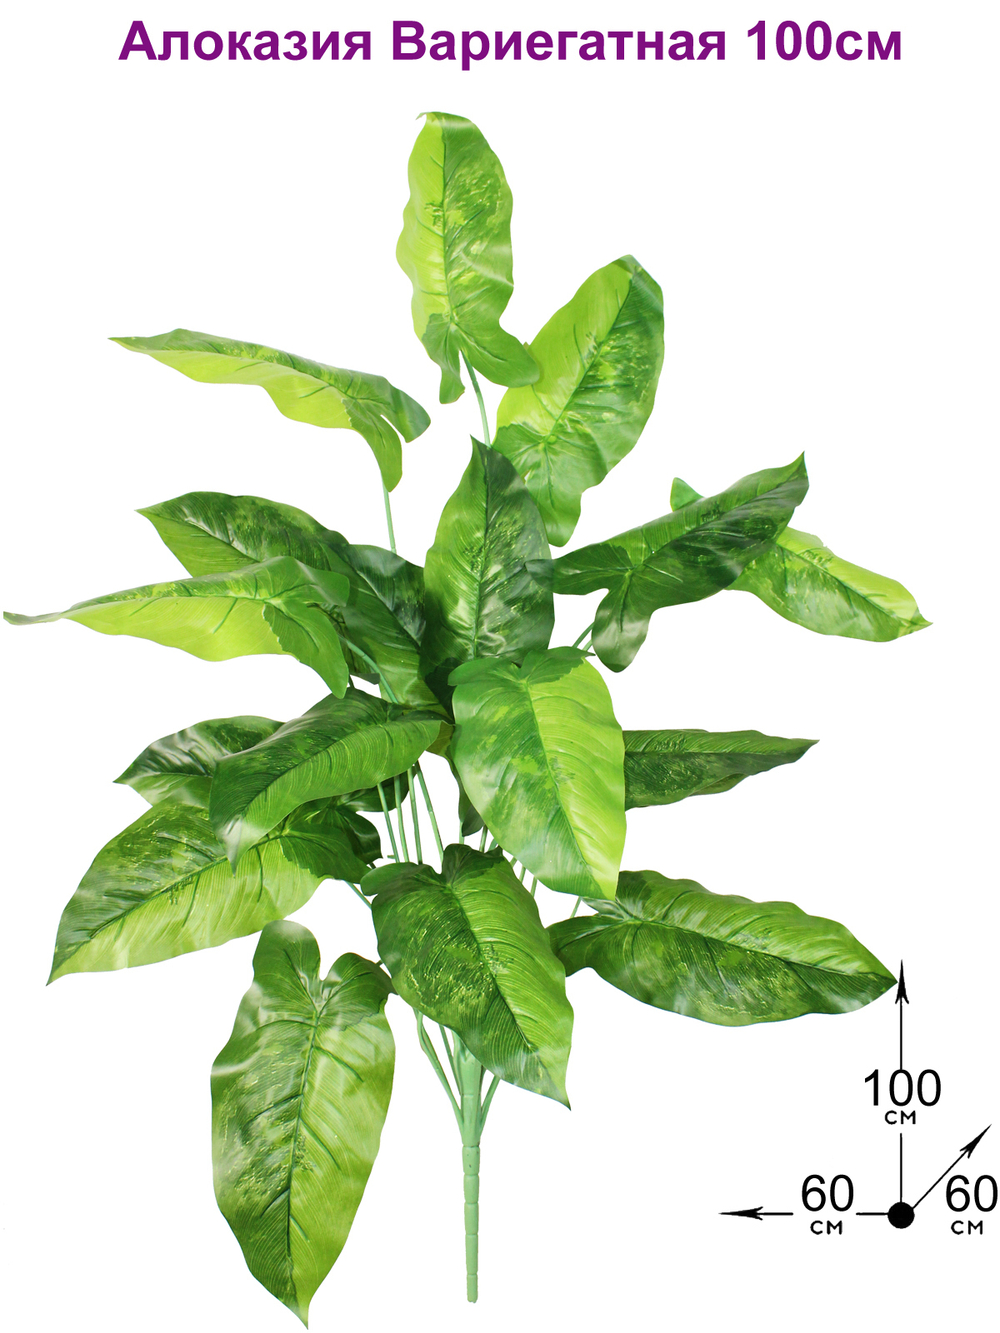 Искусственное растение Алоказия Вариегатная 100см